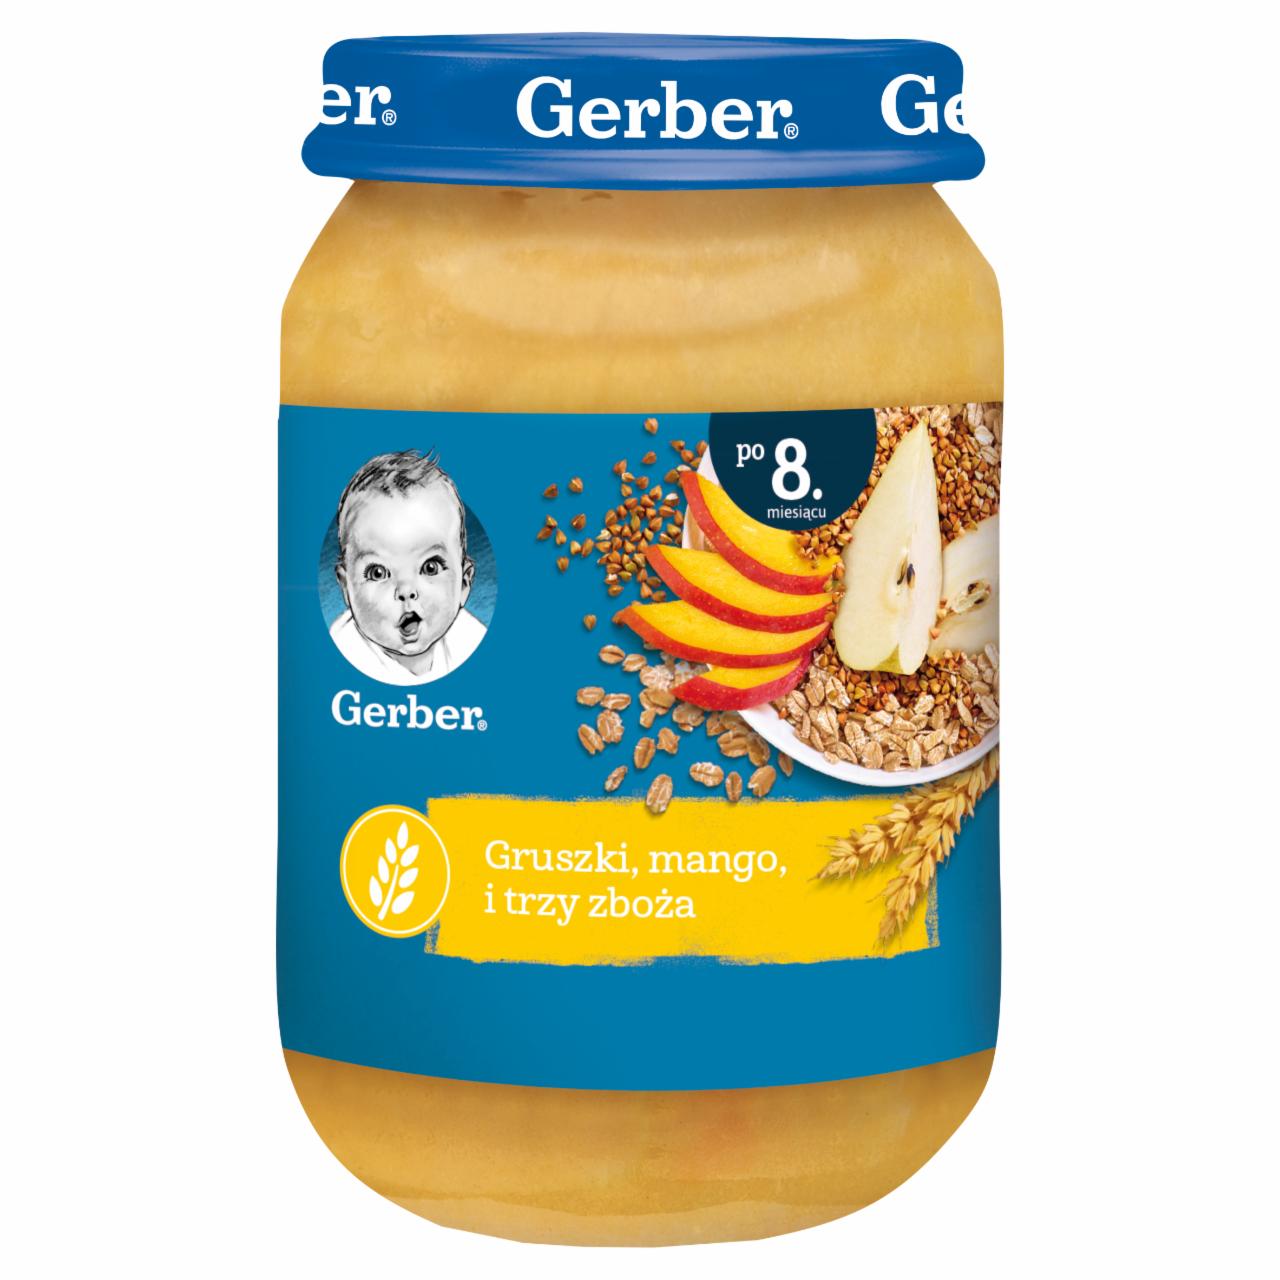 Zdjęcia - Gerber Gruszki mango i trzy zboża dla niemowląt po 8. miesiącu 190 g